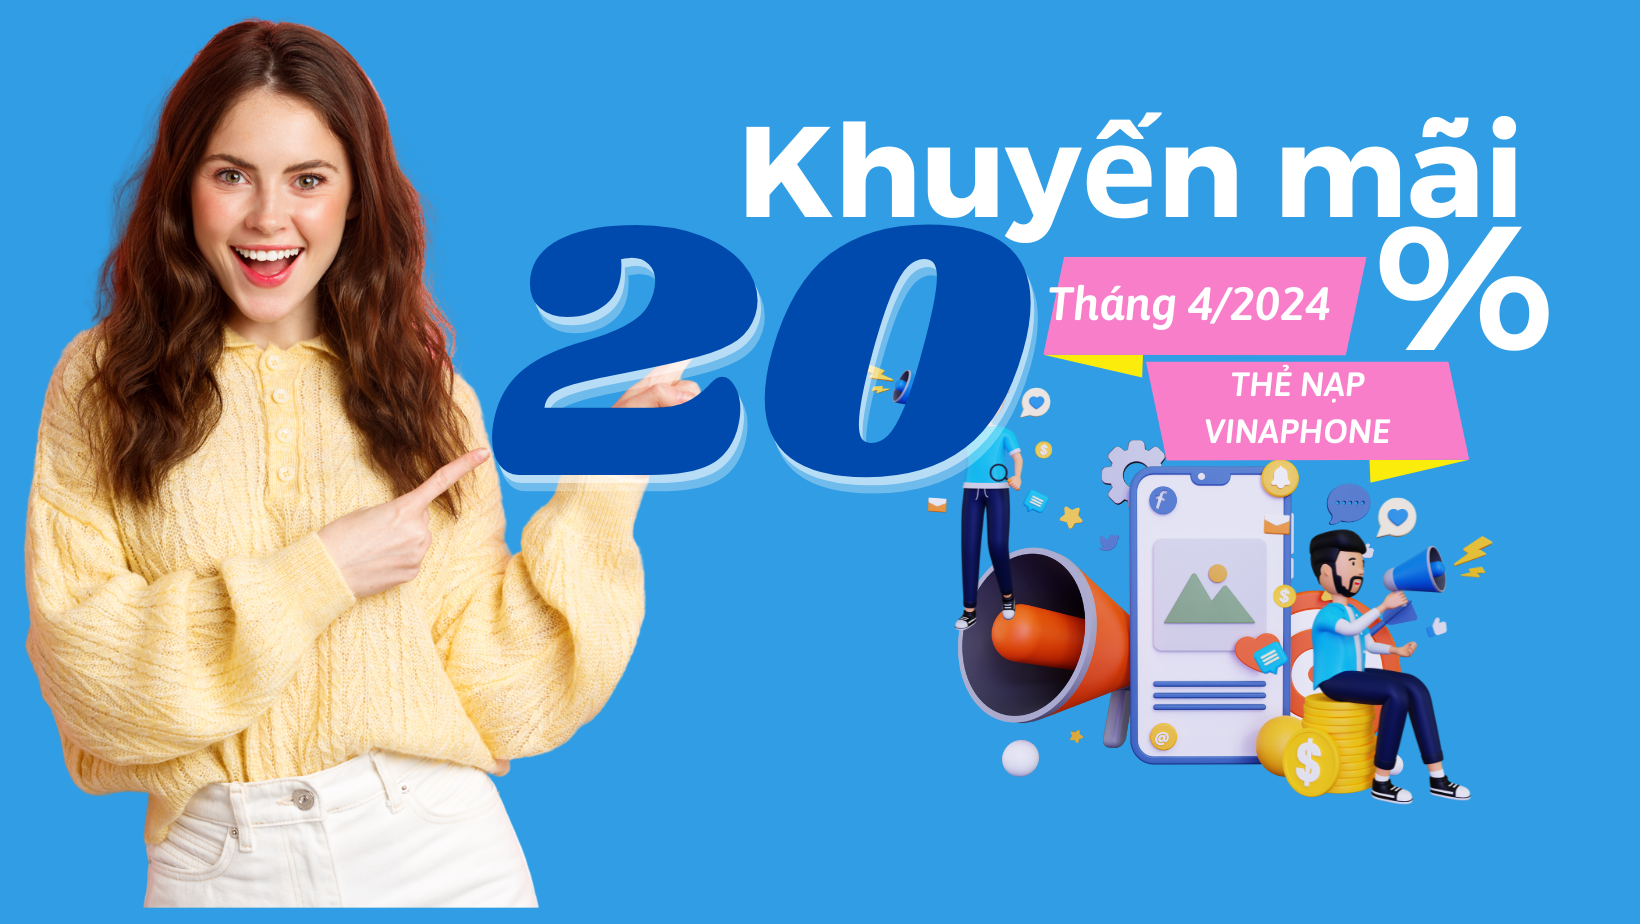 khuyen-mai-nap-the-vinaphone-thang-4-2024